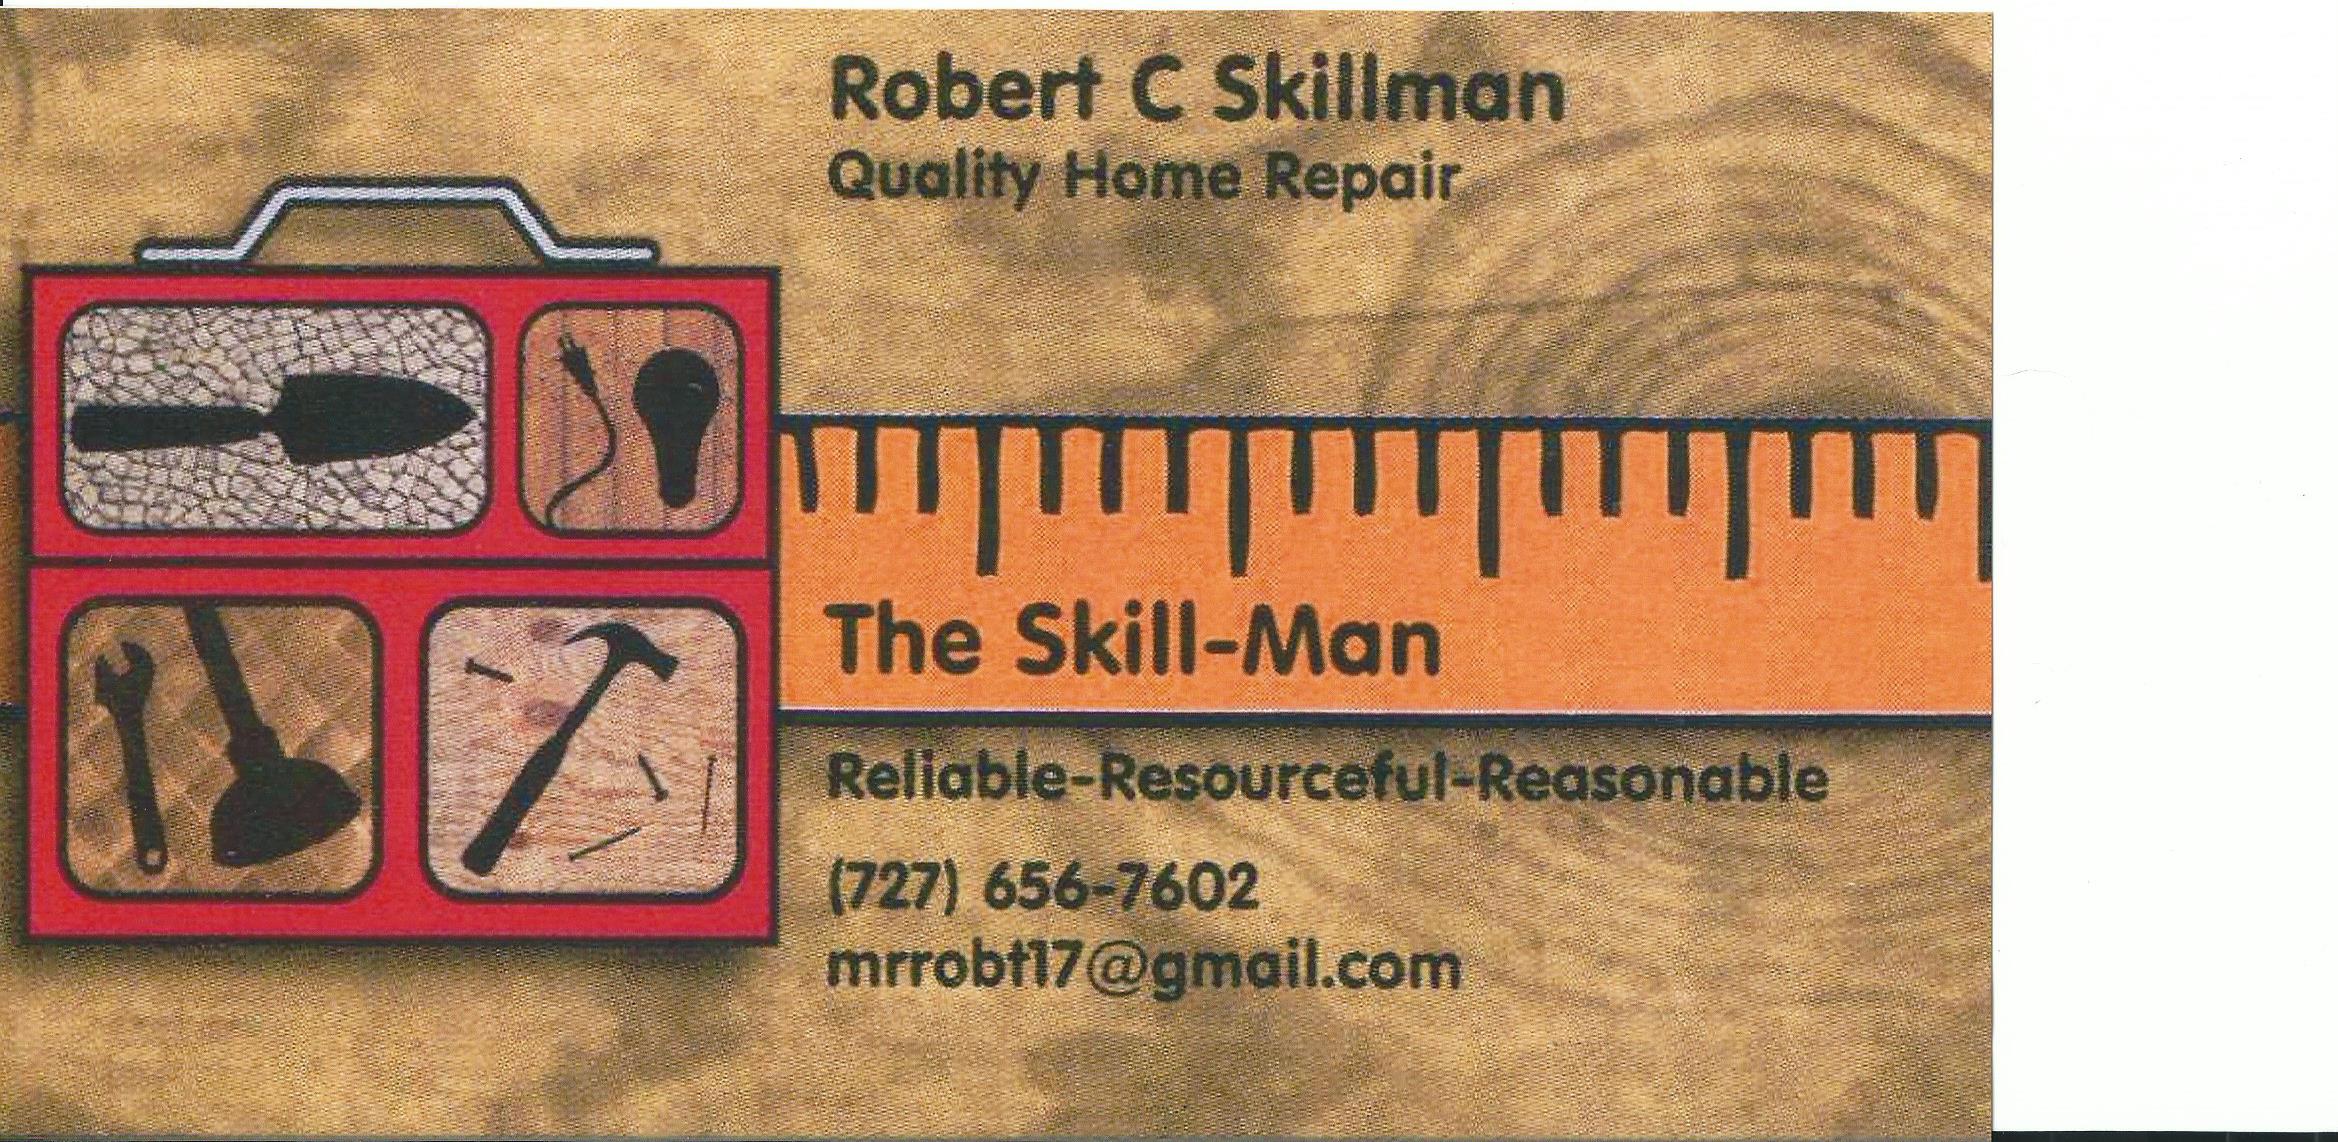 The Skill Man Logo